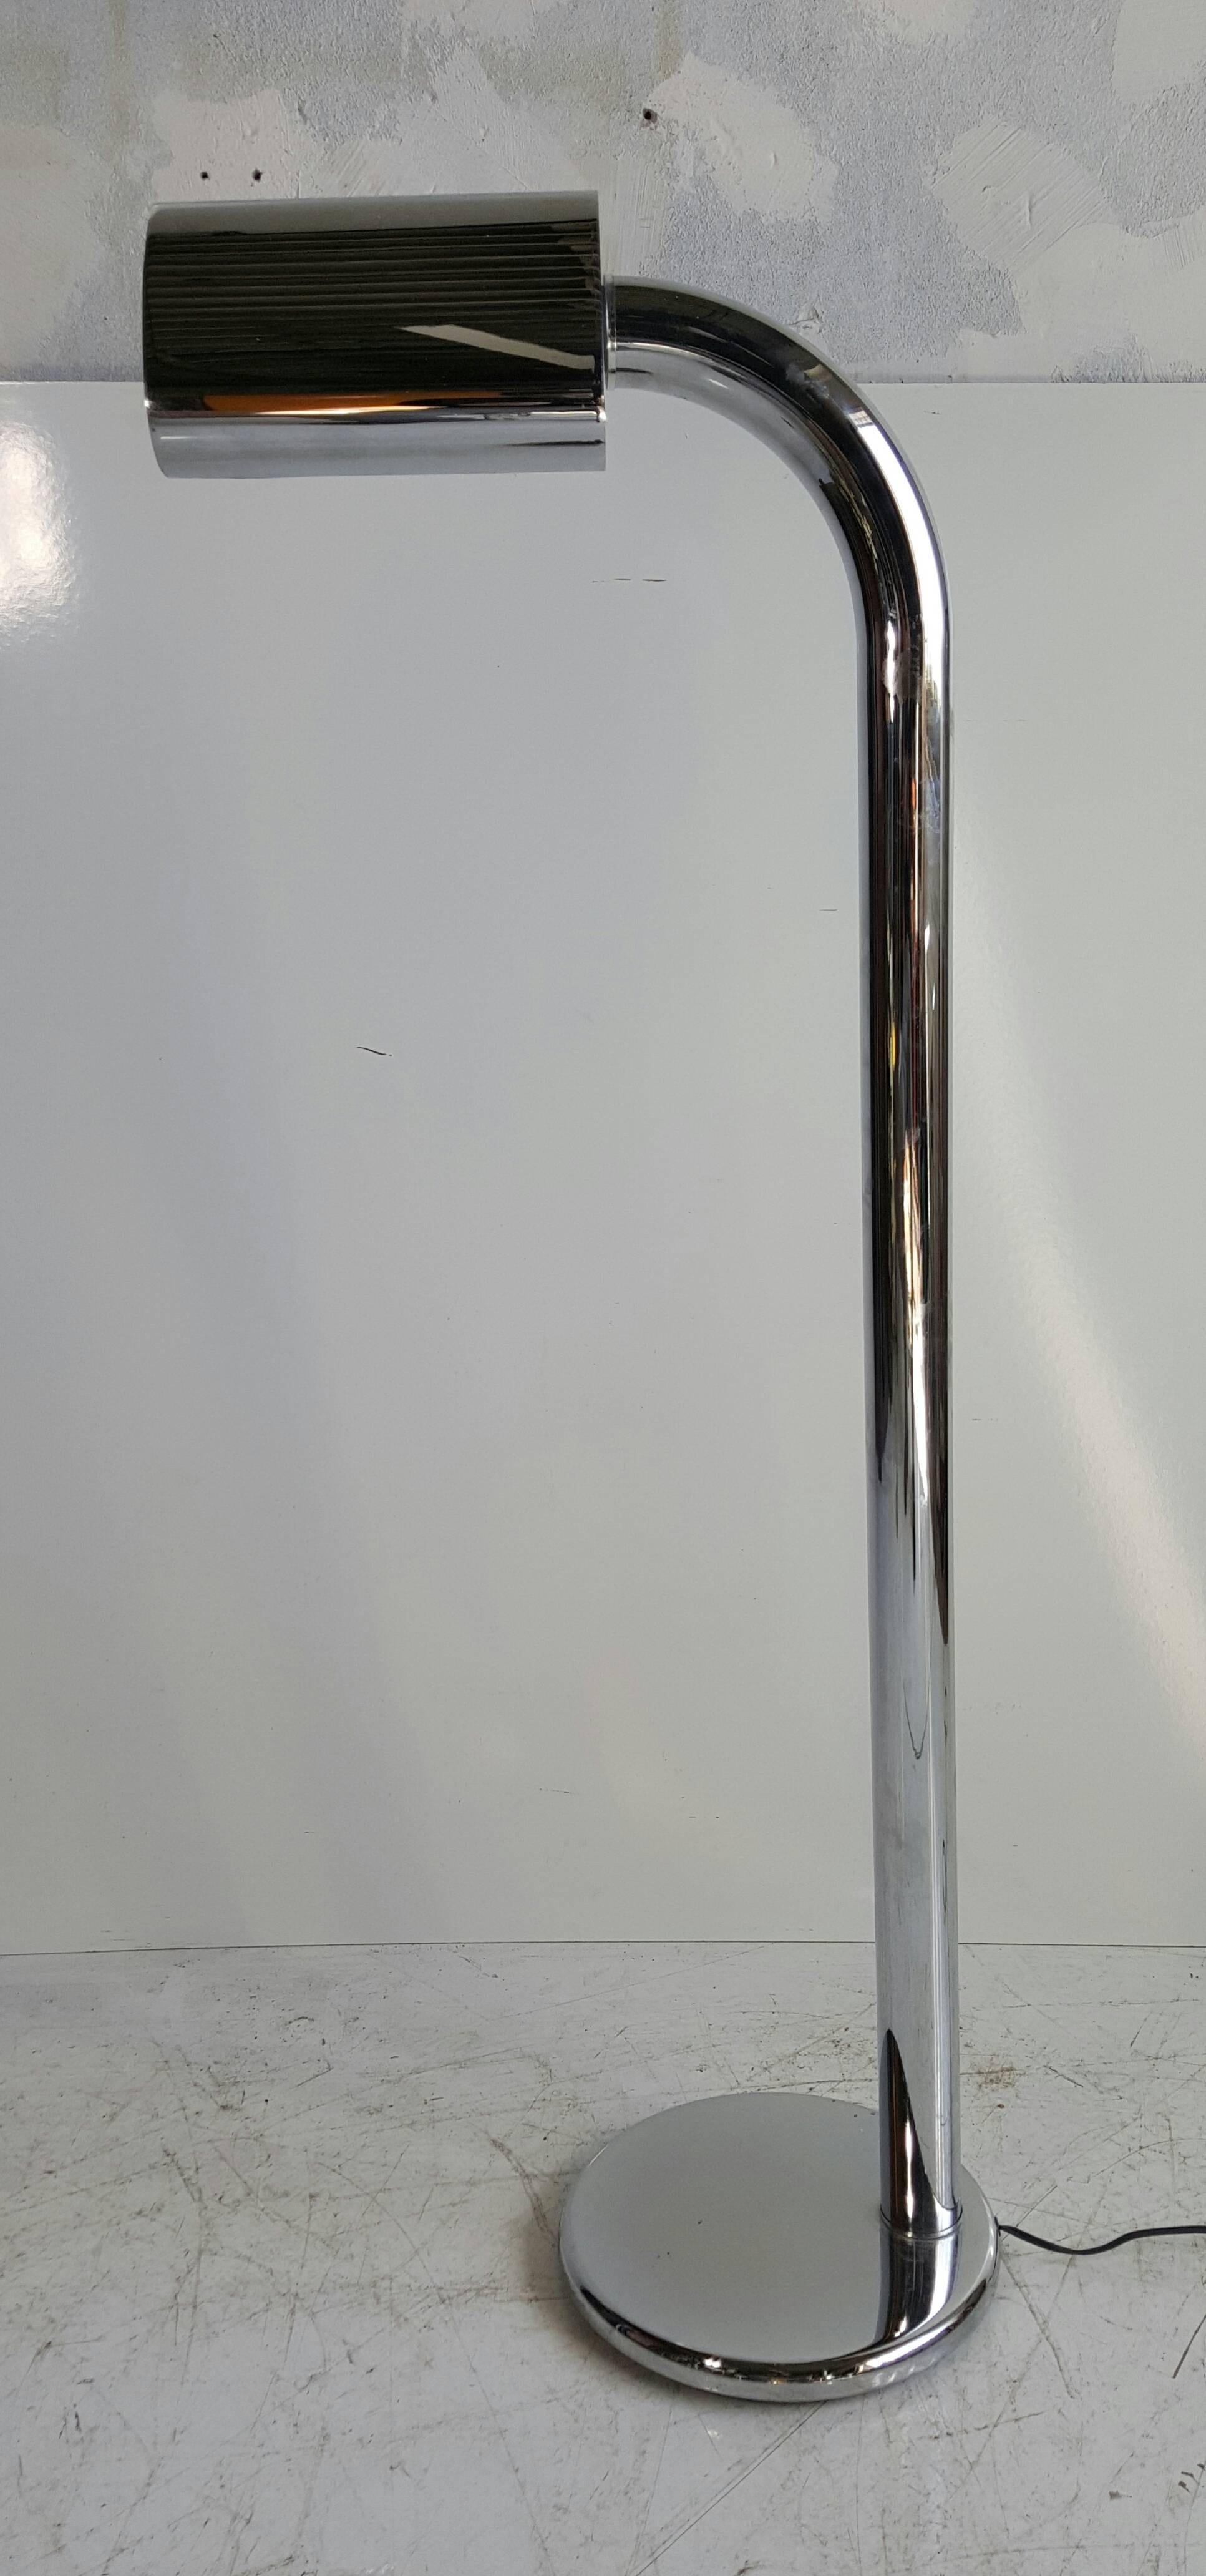 Modernistische Stehleuchte aus verchromtem Stahl von Jim Bindman für Rainbow Lamp Co. Silberner Kugel-Dimmschalter. Schlankes, einfaches, elegantes Design, das sich nahtlos in jede Umgebung einfügt.